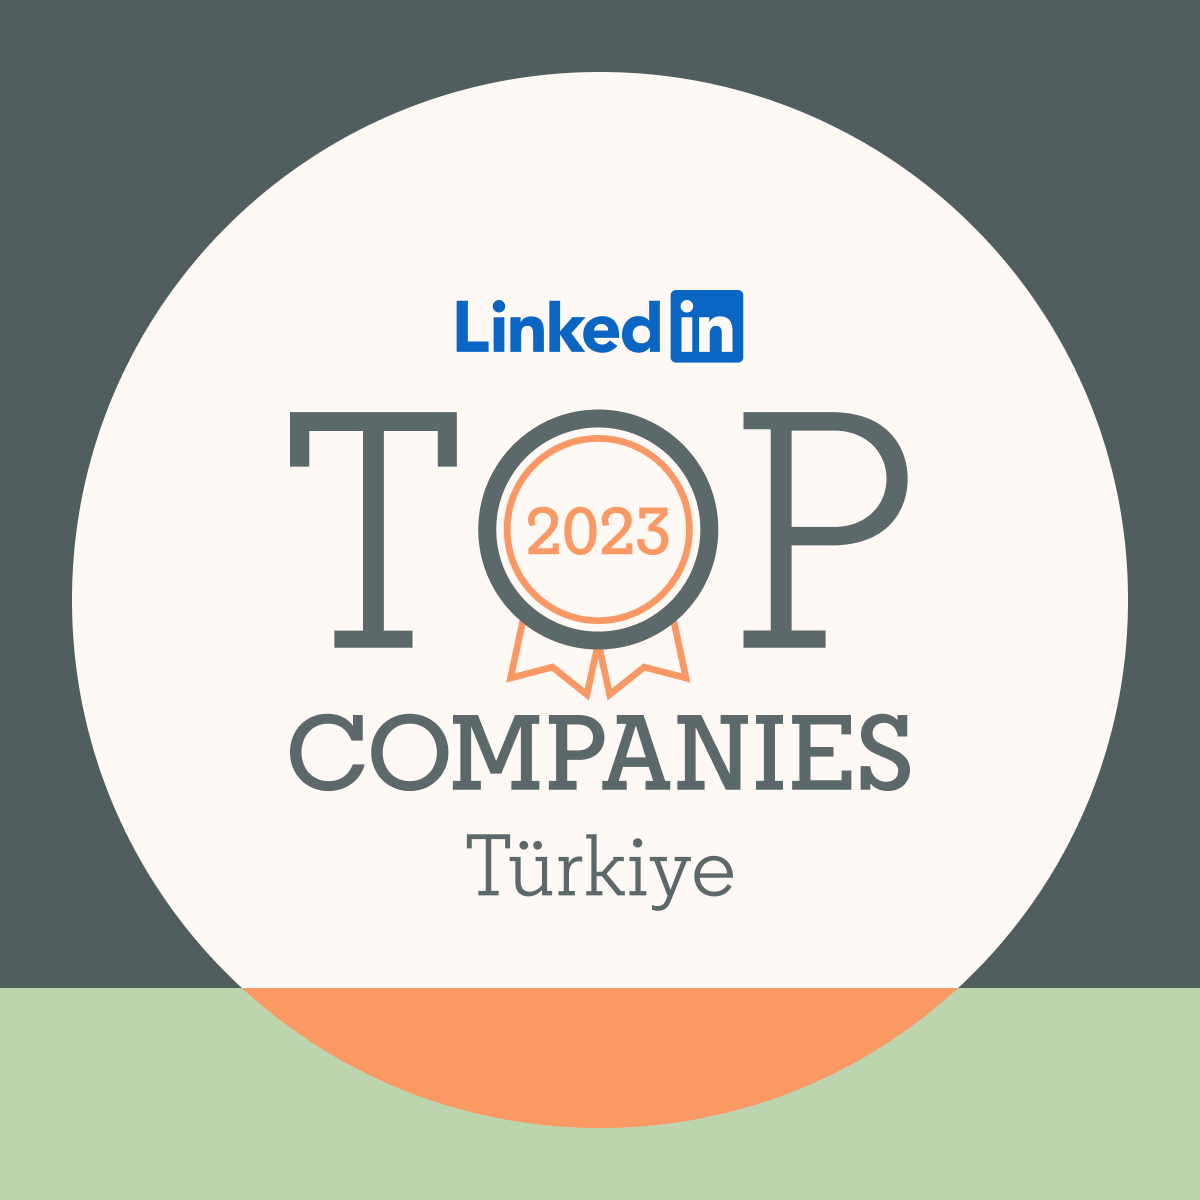 Türkiye’de ilk kez yayınlanan 2023 LinkedIn Top Companies listesinde P&G Türkiye olarak 3.sırada yer almaktan mutluluk duyuyoruz! linkedin.com/pulse/top-comp…